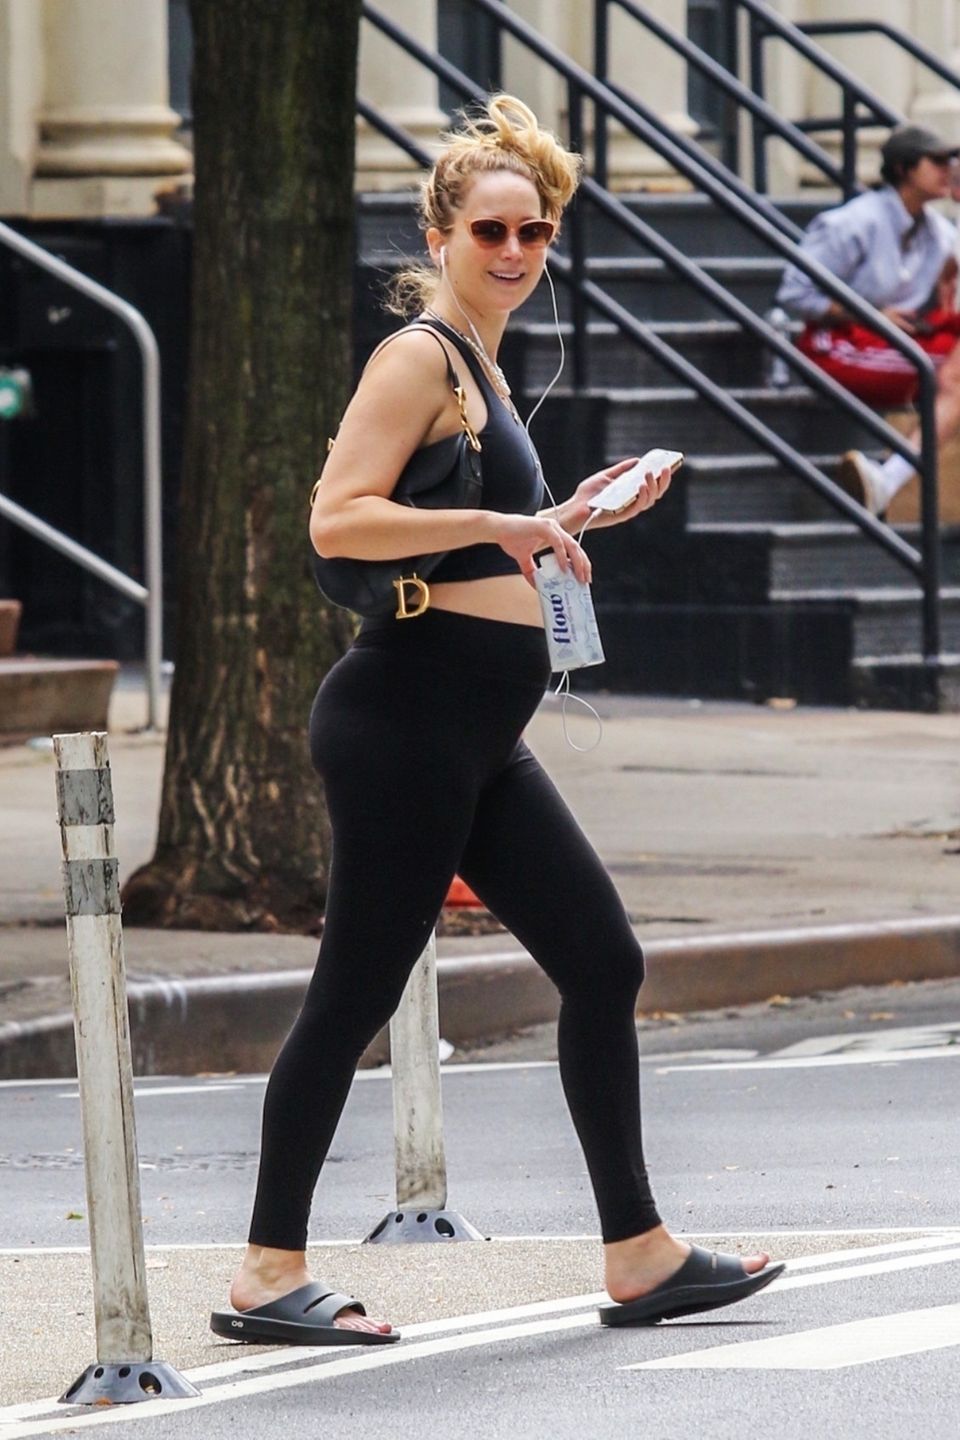 3. Oktober 2021  Gut gelaunt zeigt Jennifer Lawrence sich und ihren wachsenden Babybauch bei einem Spaziergang durch New York. Dass sie dabei ungestylt und in Sportklamotten von den Paparazzi abgelichtet wird, scheint ihr herzlich egal zu sein. Und gerade das macht sie noch sympathischer.   